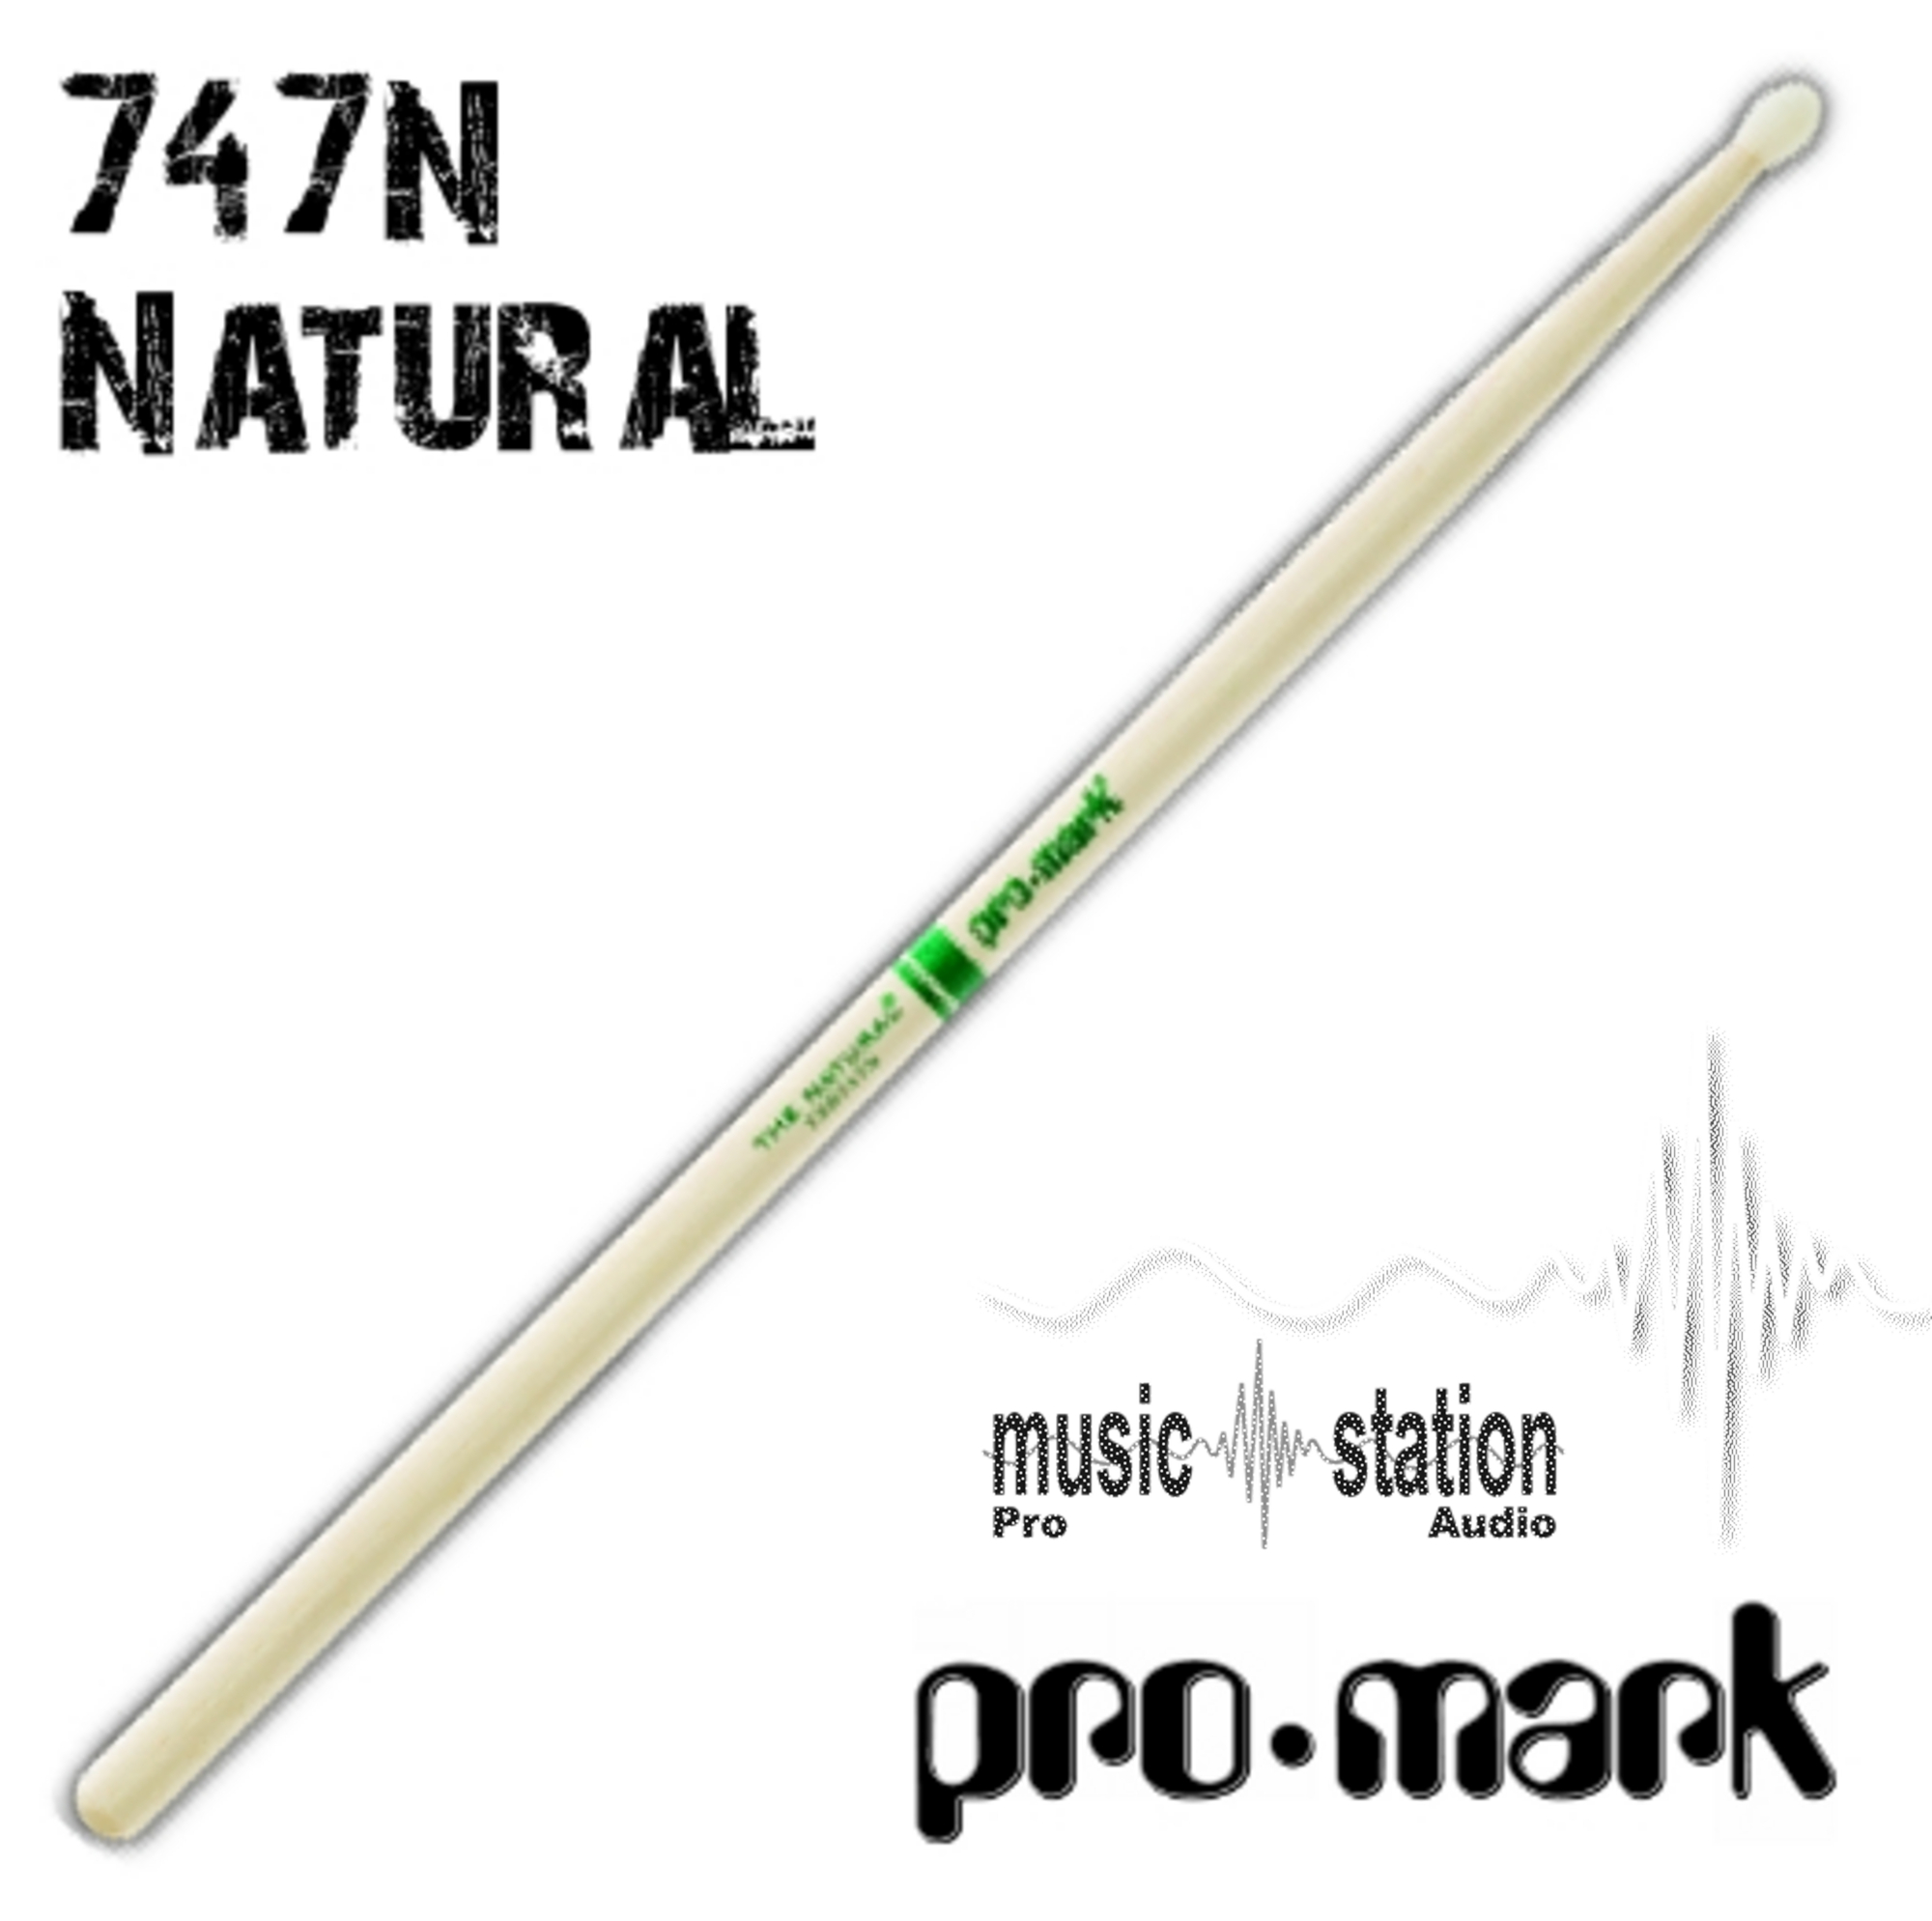 Promark Sticks 747 Nylon Natural